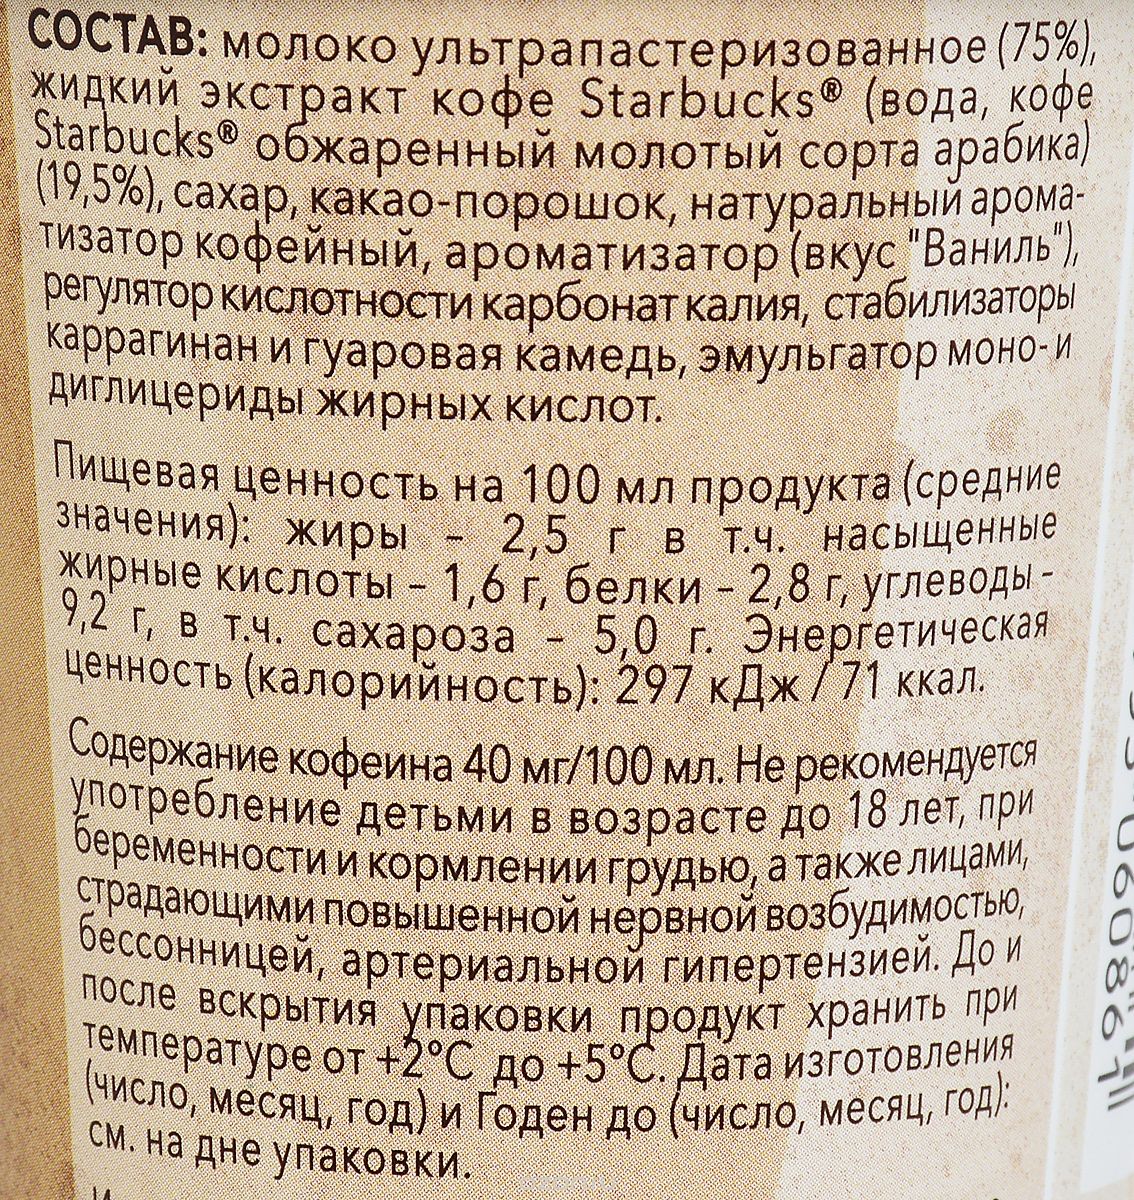 Starbucks Cappuccino,   , 2,5%, 220 